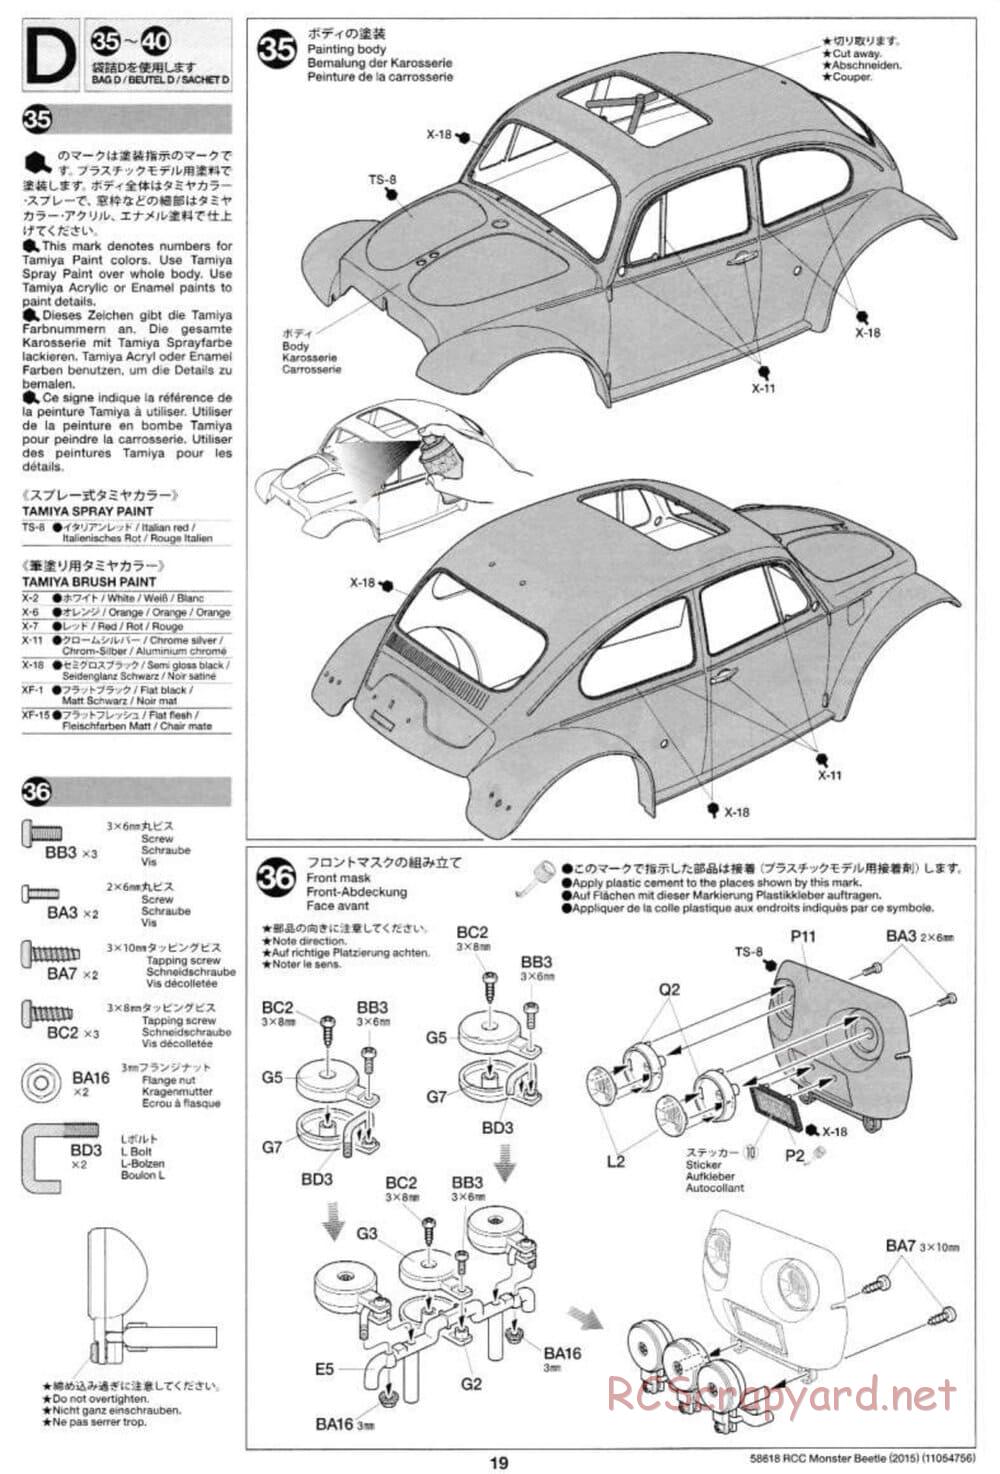 Tamiya - Monster Beetle 2015 - ORV Chassis - Manual - Page 19